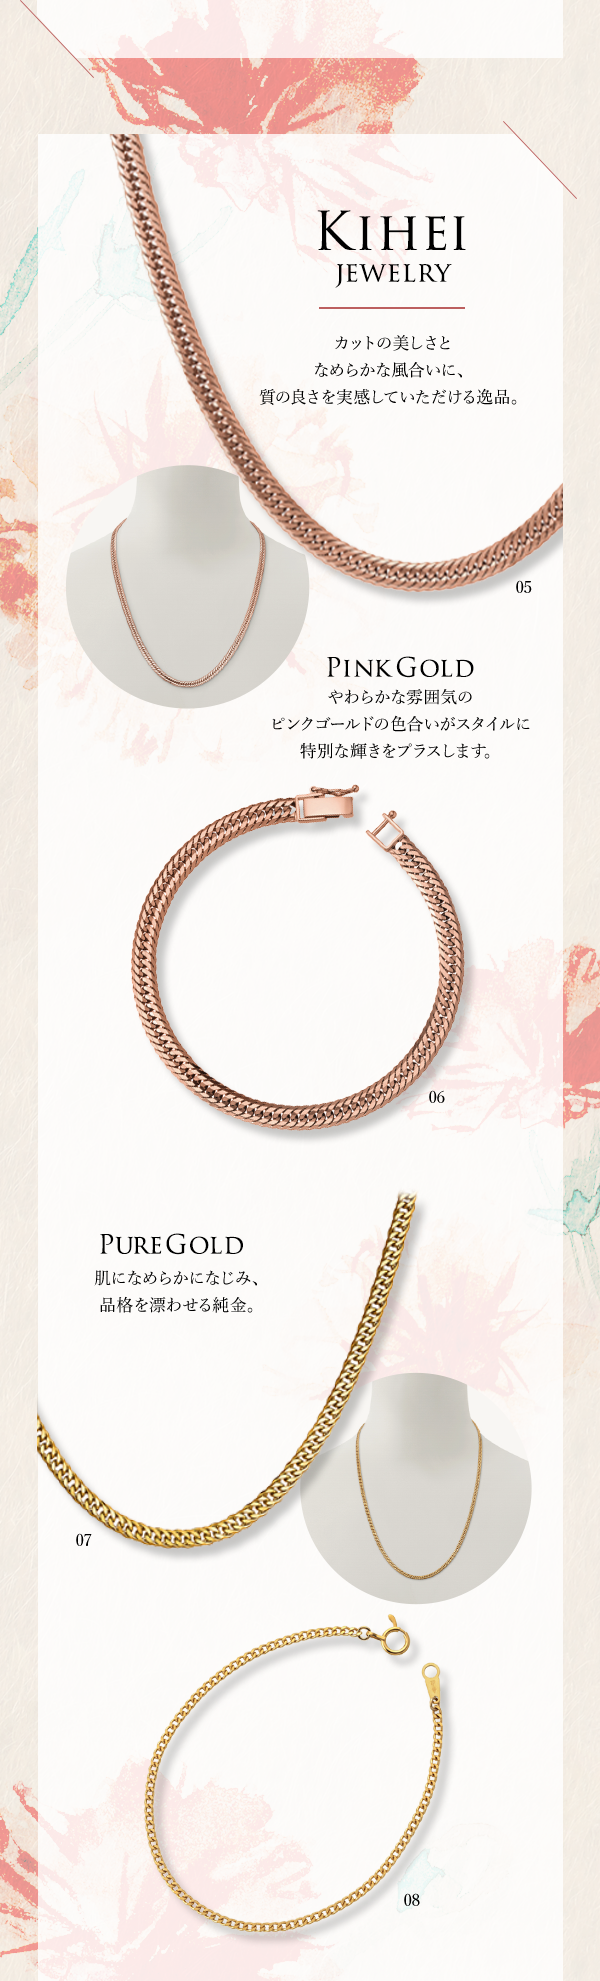 Kihei Jewelry カットの美しさとなめらかな風合いに、質の良さを実感していただける逸品。PinkGold やわらかな雰囲気のピンクゴールドの色合いがスタイルに特別な輝きをプラスします。PureGold 肌になめらかになじみ、品格を漂わせる純金。